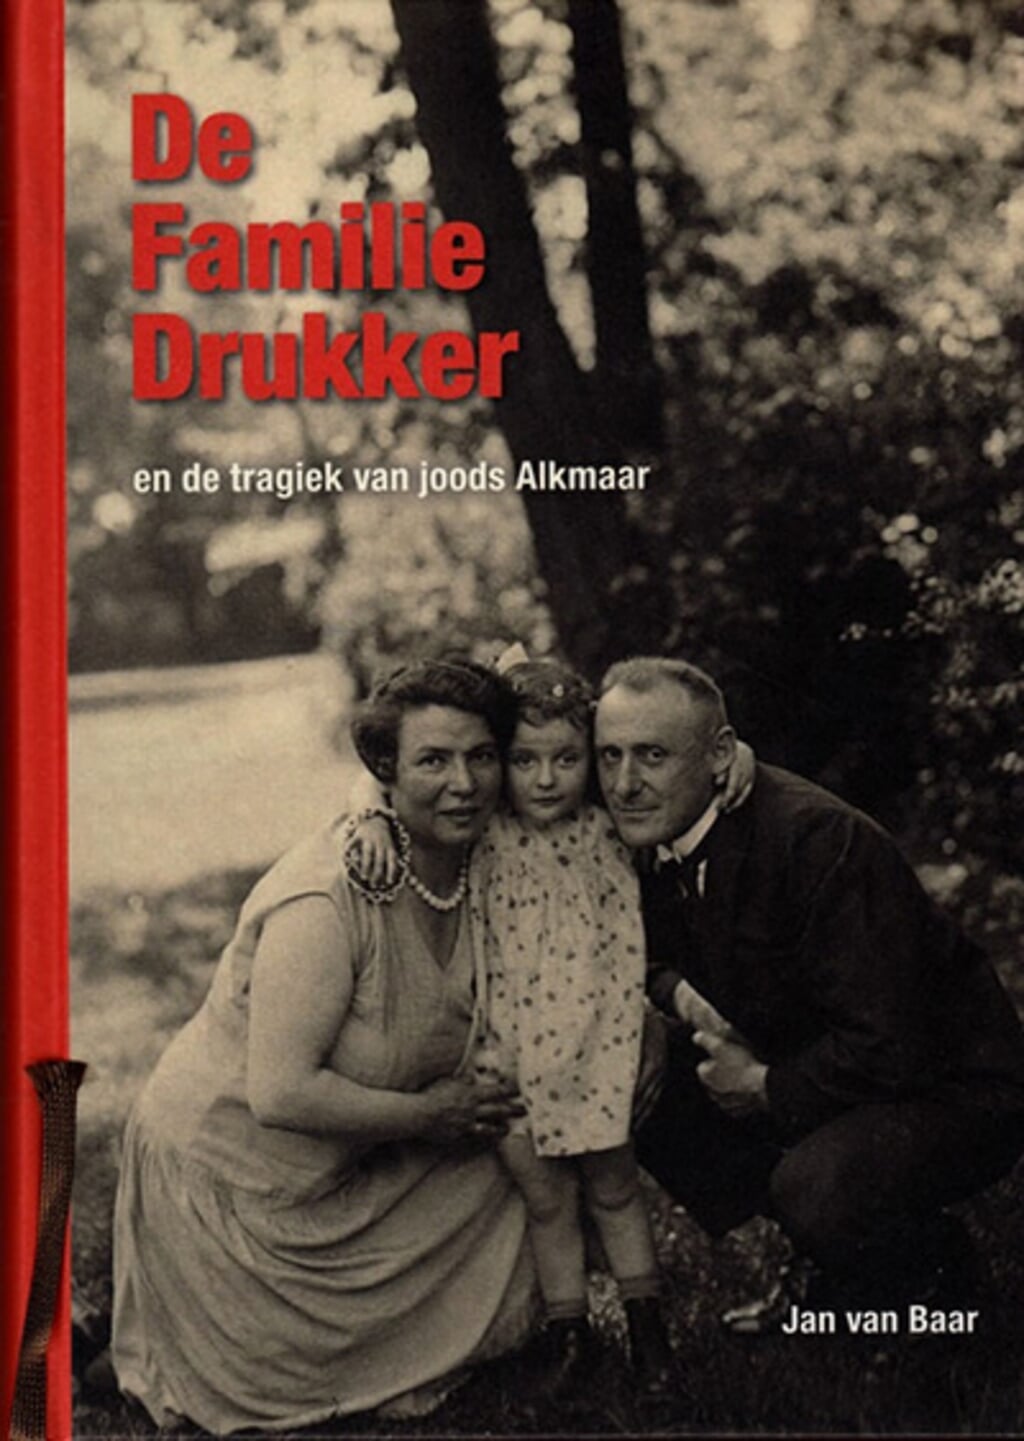 Boek familie Drukker